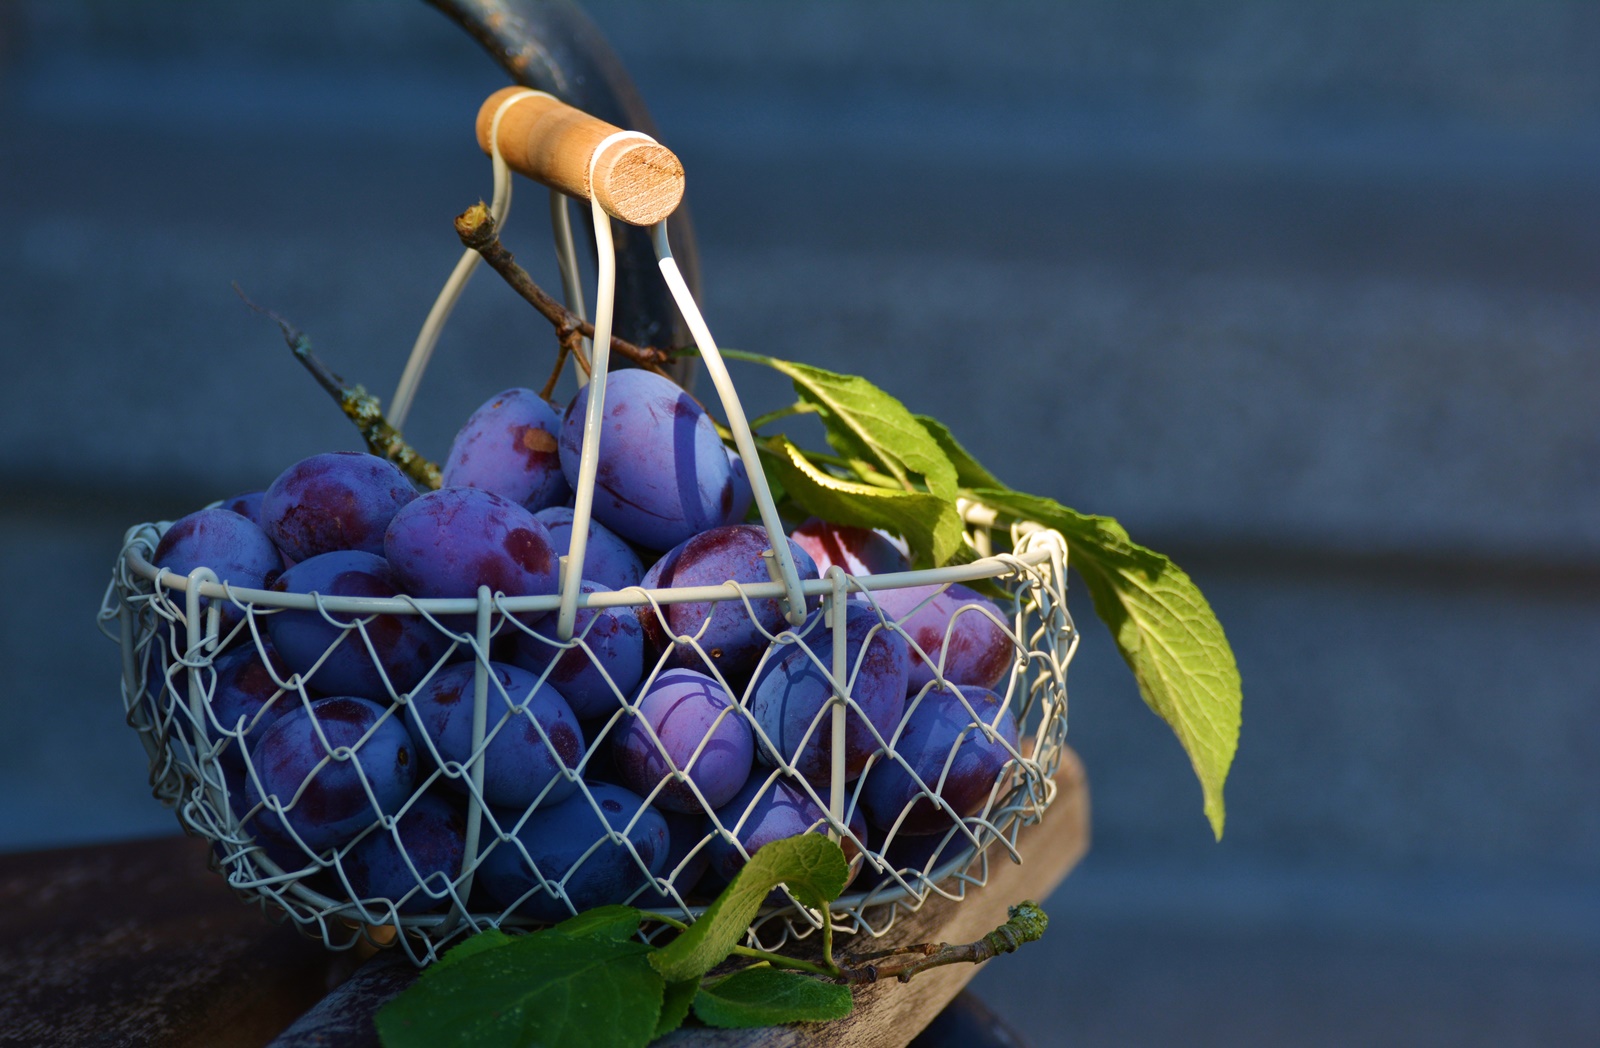 Φρούτα που παχαίνουν: Απολαύστε τα, αλλά με μέτρο